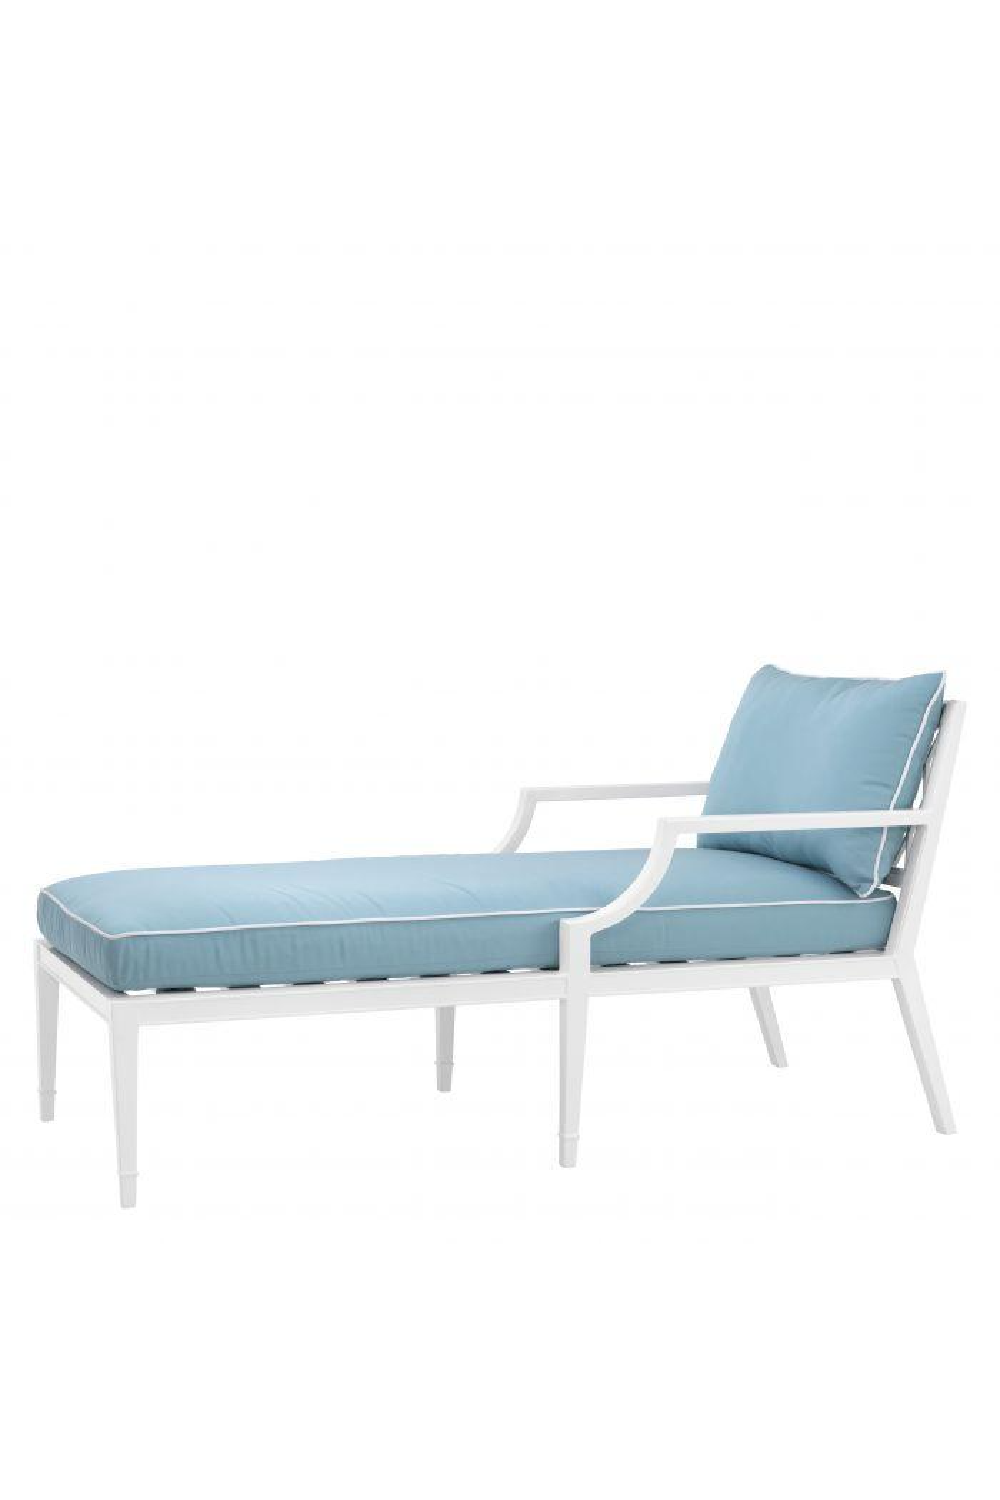 Blue Outdoor Chaise Lounge Chair | Eichholtz Bella Vista | Oroa.com